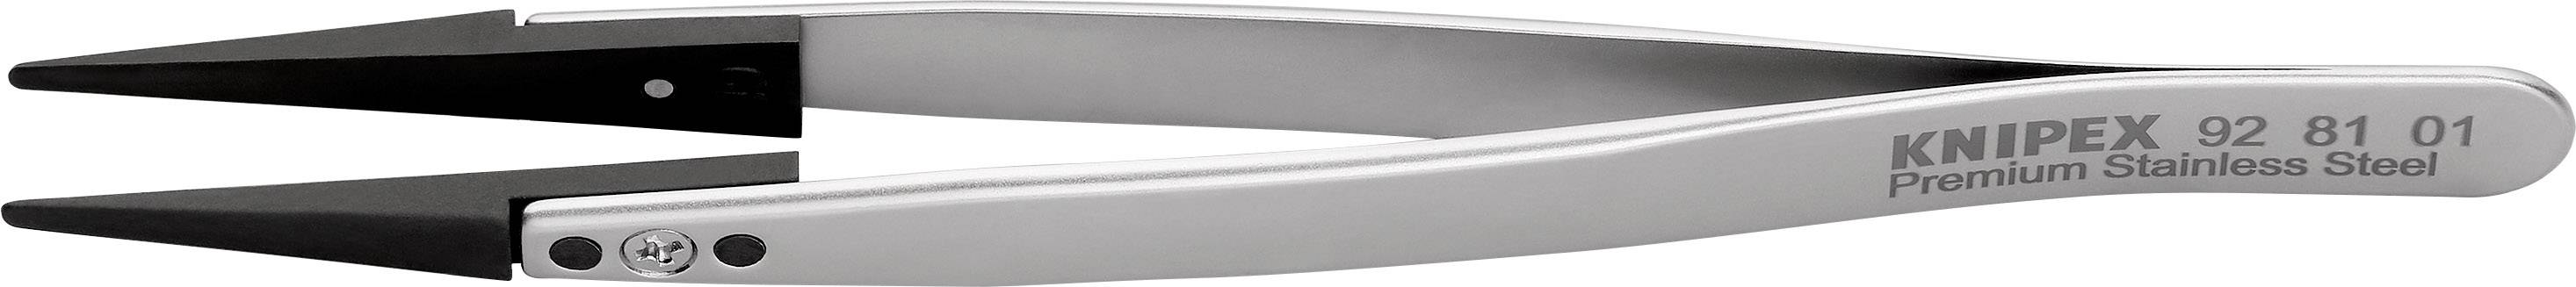 KNIPEX 92 81 01 ESD-Pinzette mit Wechselspitzen 1 Stück Stumpf 130 mm